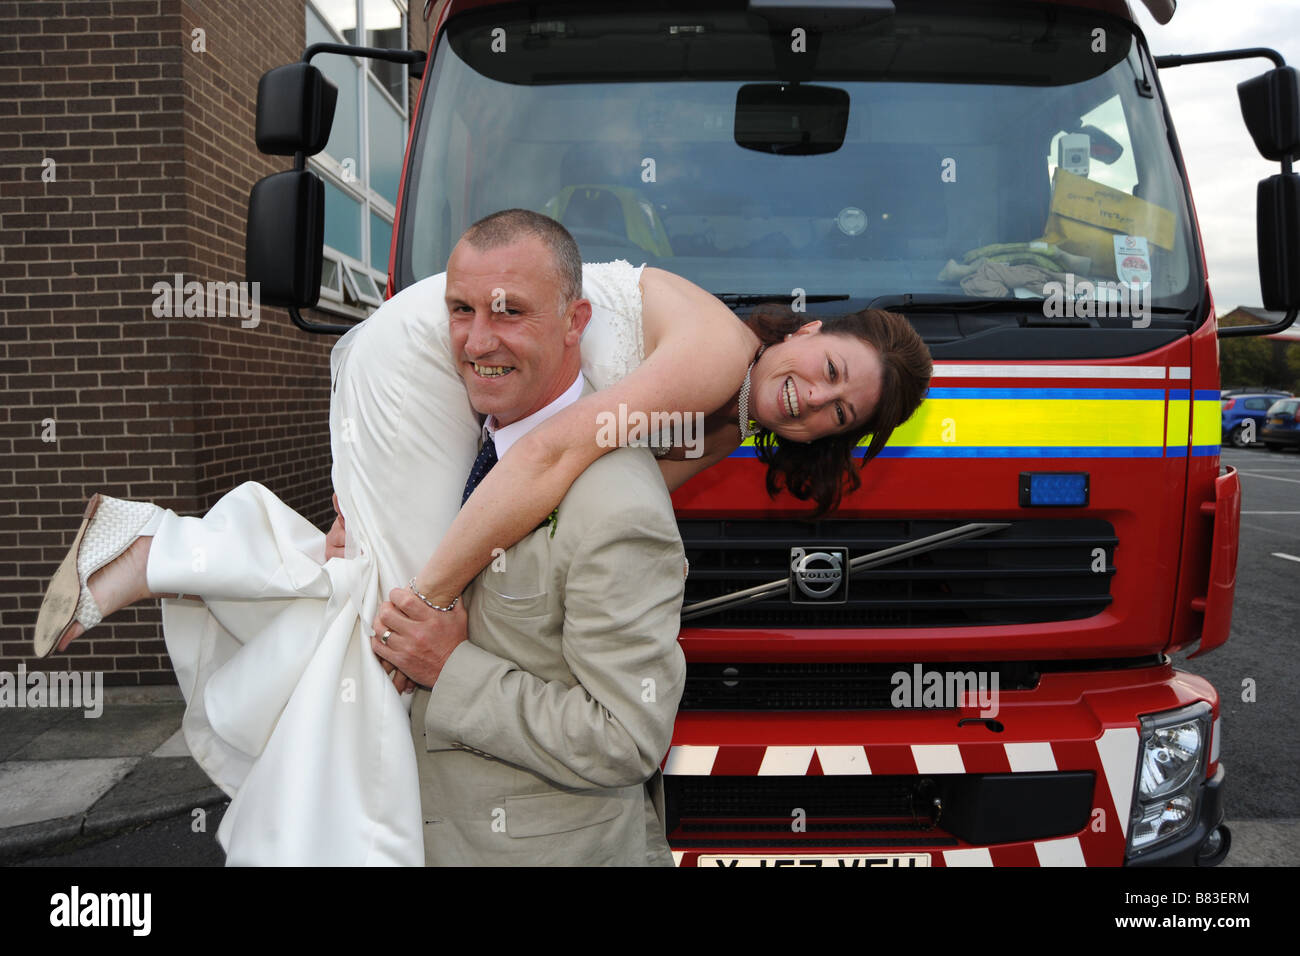 Ein Feuerwehrmann mit seiner frisch vermählte Braut West Yorkshire Modell veröffentlicht Stockfoto